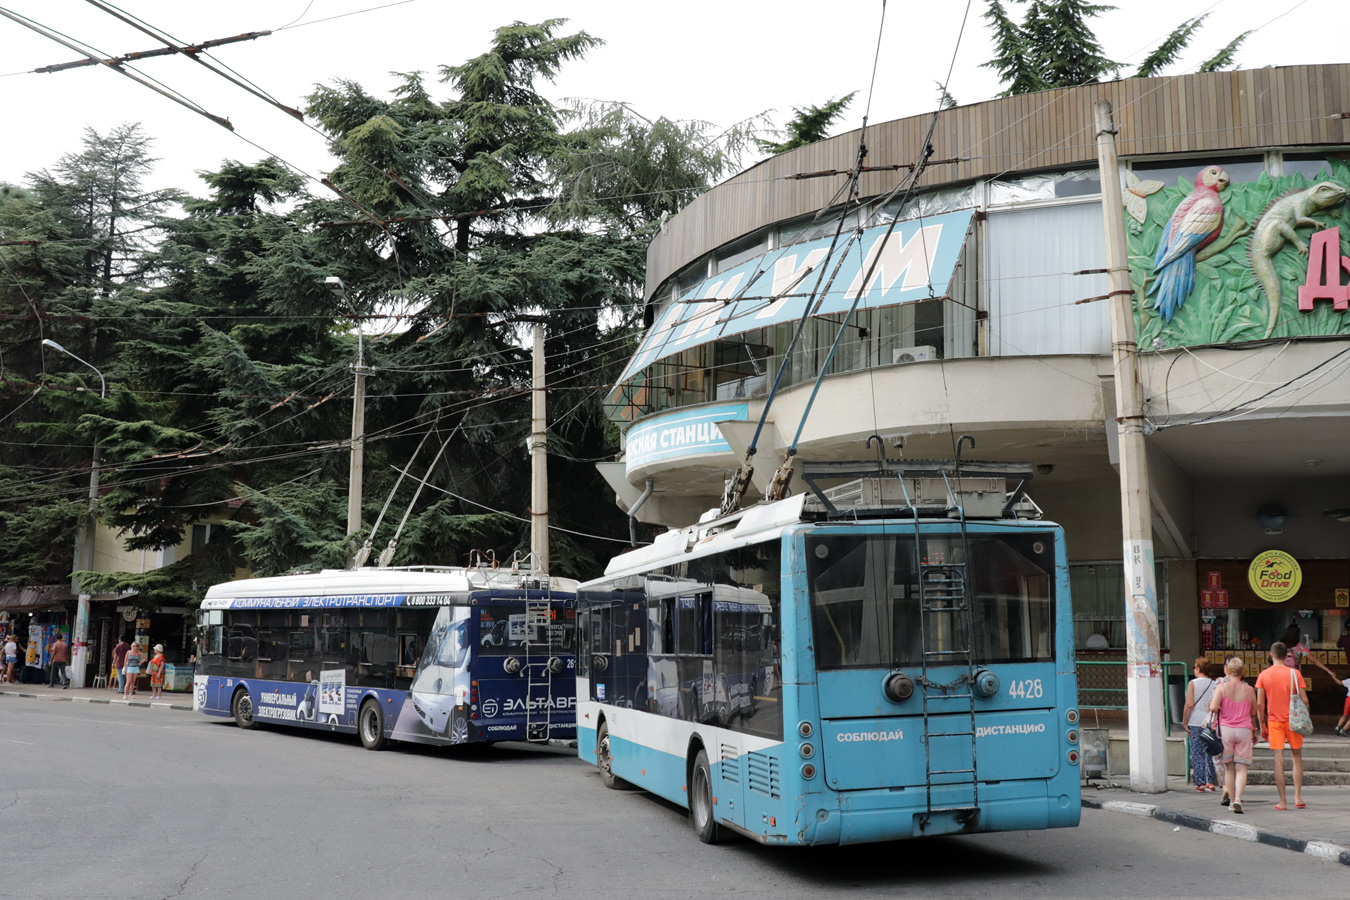 Crimean trolleybus, Bogdan T70115 # 4428